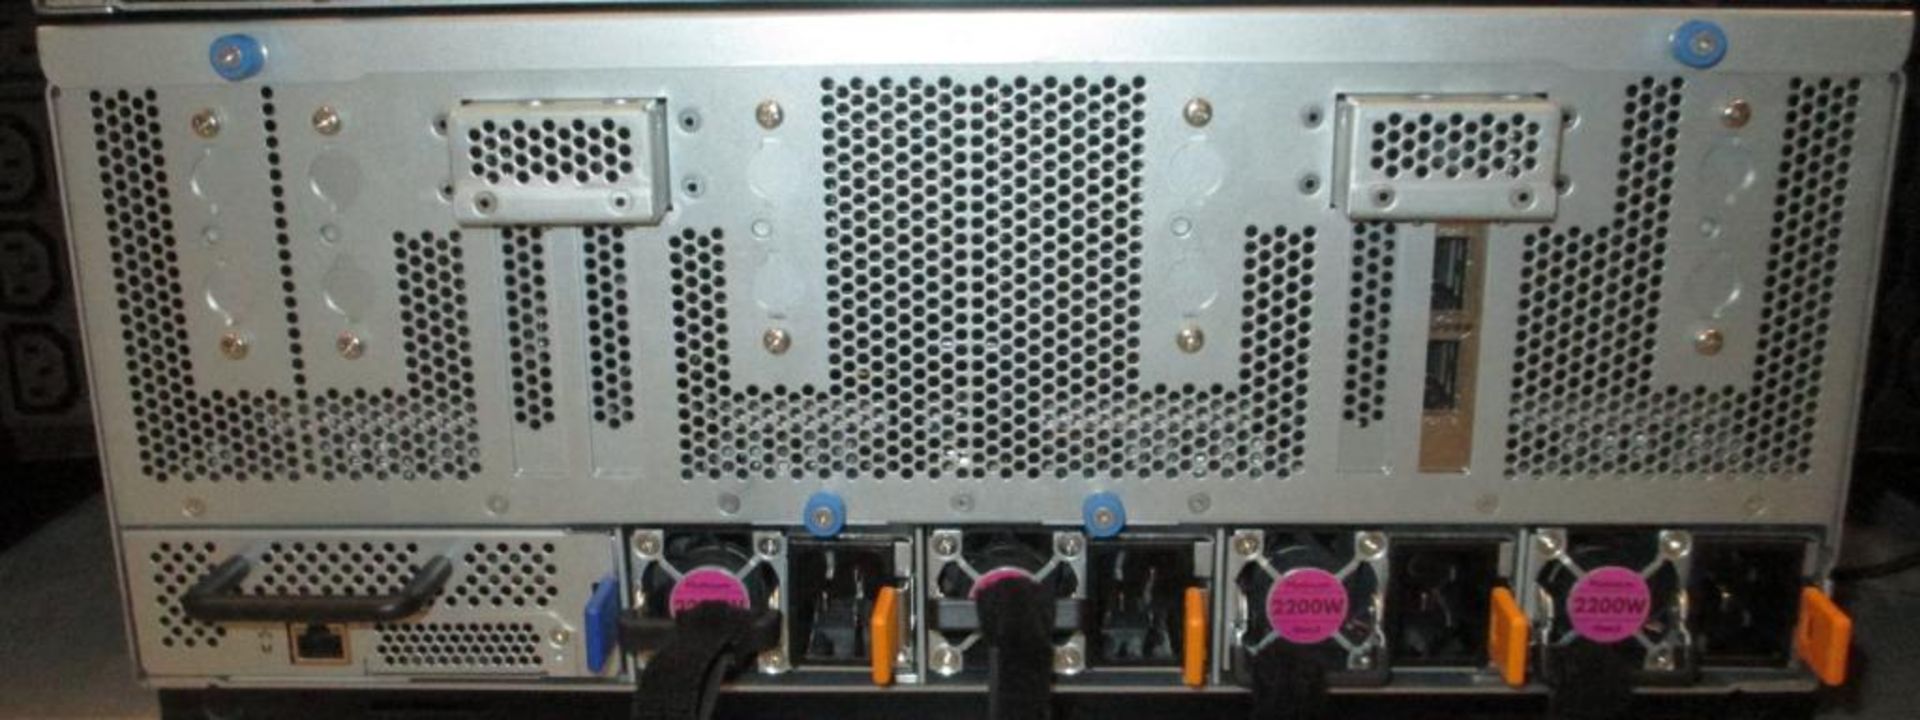 Gigabyte Rack Server - Image 2 of 2